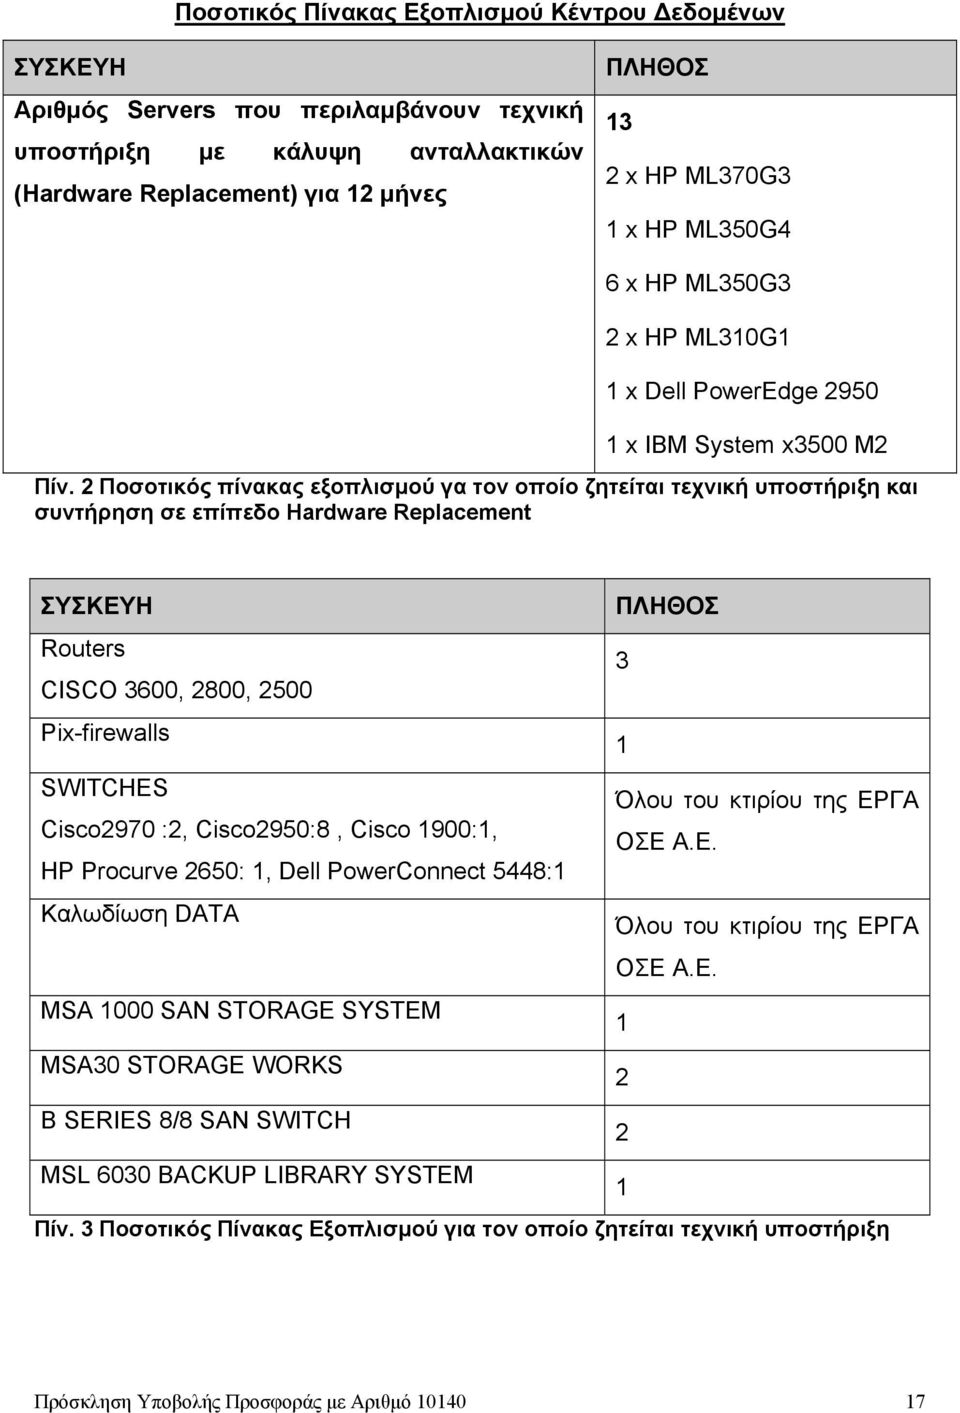 2 Ποσοτικός πίνακας εξοπλισμού γα τον οποίο ζητείται τεχνική υποστήριξη και συντήρηση σε επίπεδο Hardware Replacement ΣΥΣΚΕΥΗ ΠΛΗΘΟΣ Routers 3 CISCO 3600, 2800, 2500 Pix-firewalls 1 SWITCHES